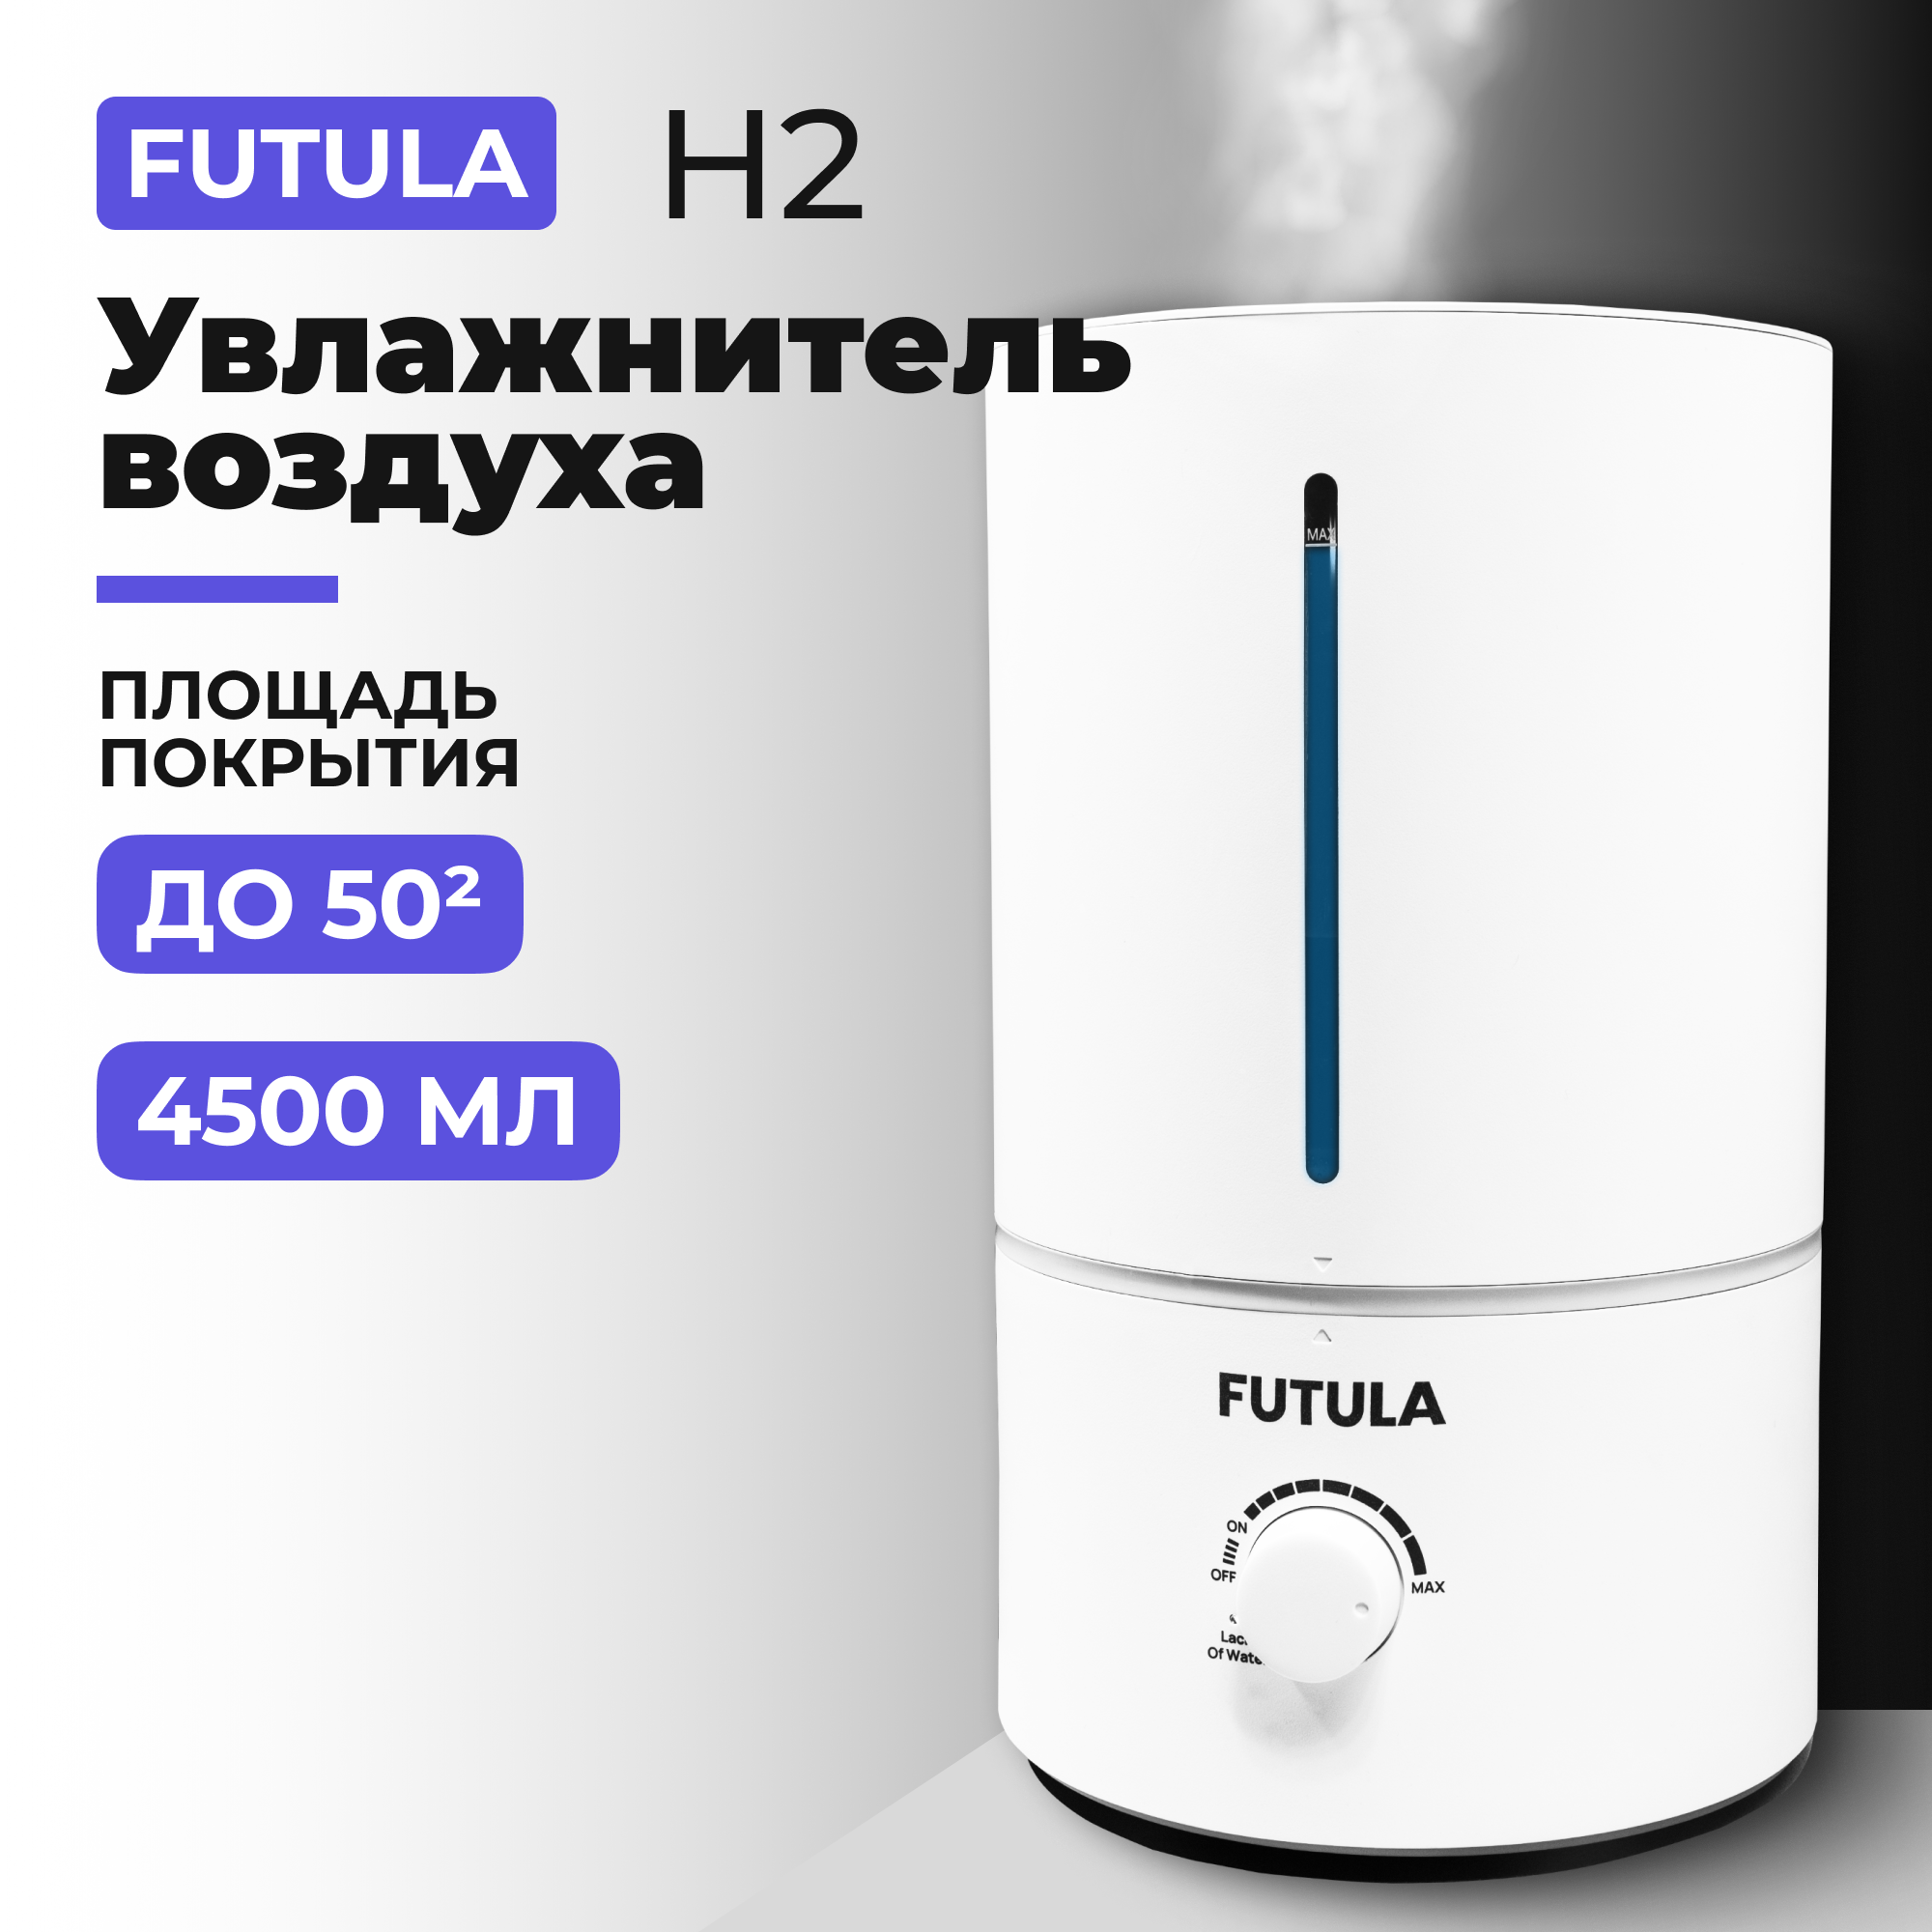 Воздухоувлажнитель Futula H2 белый электромясорубка futula mg6 700 вт серебристый